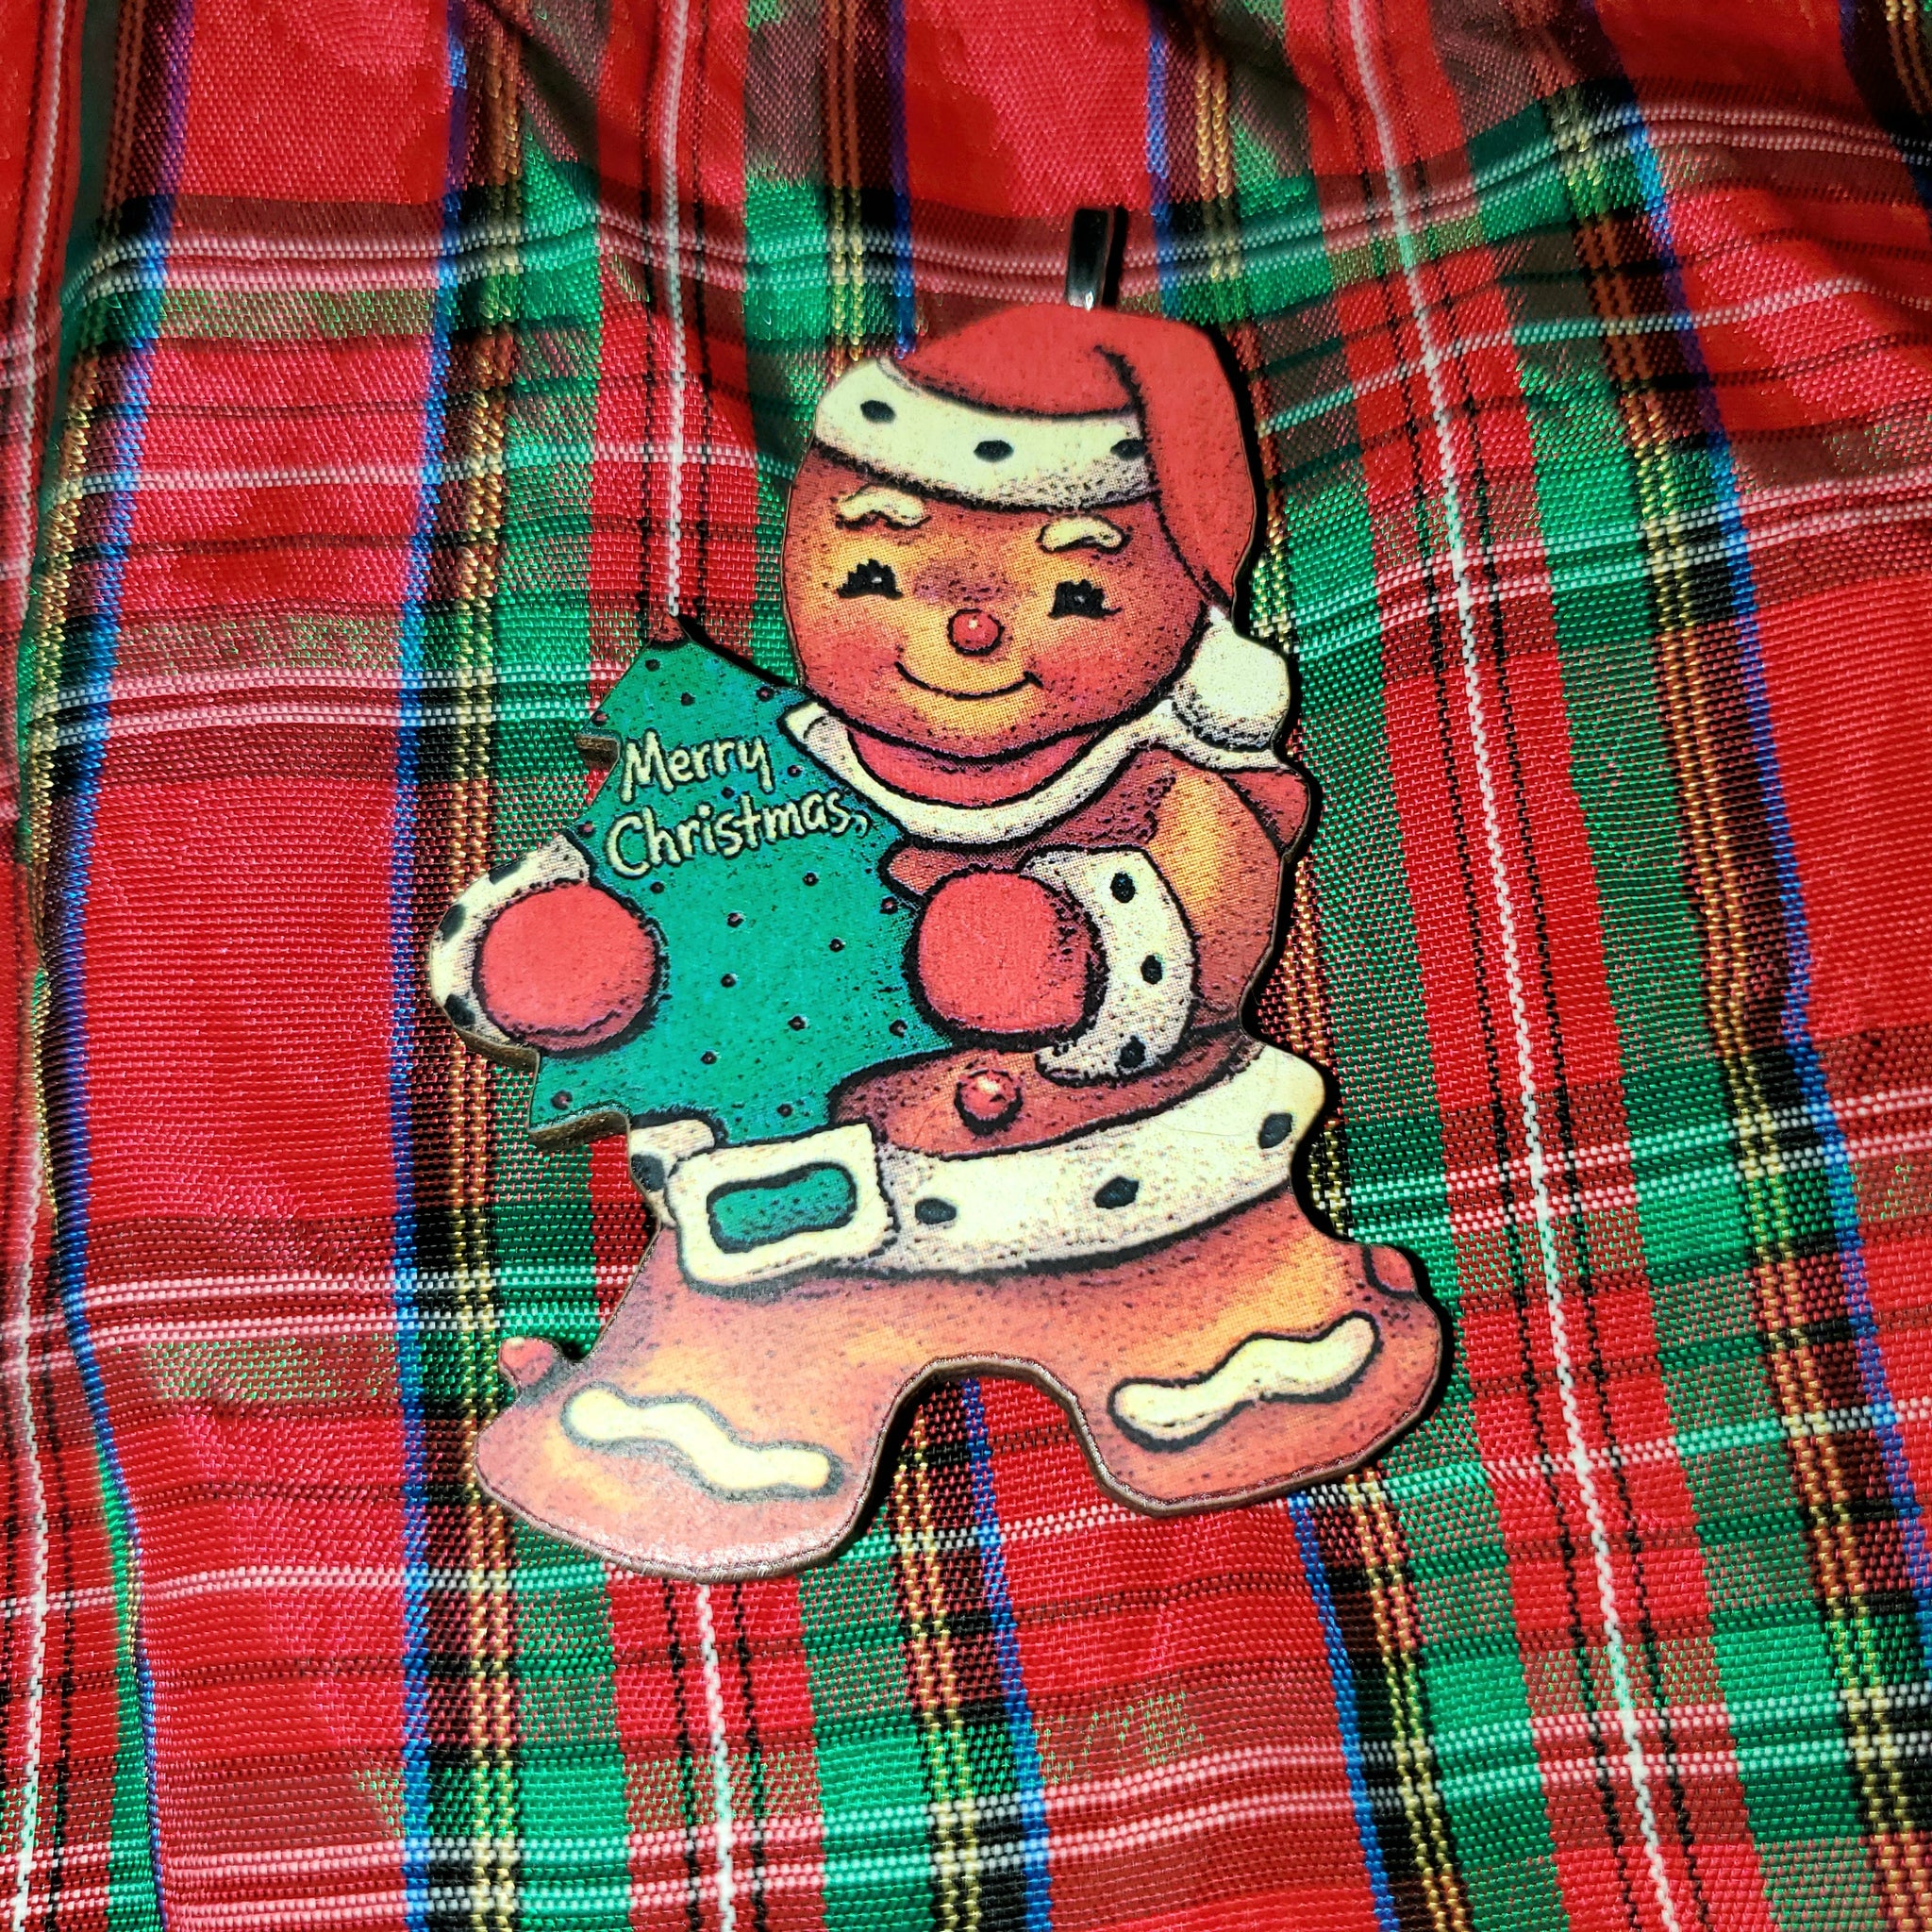 Gingerbread Man Ornament #1